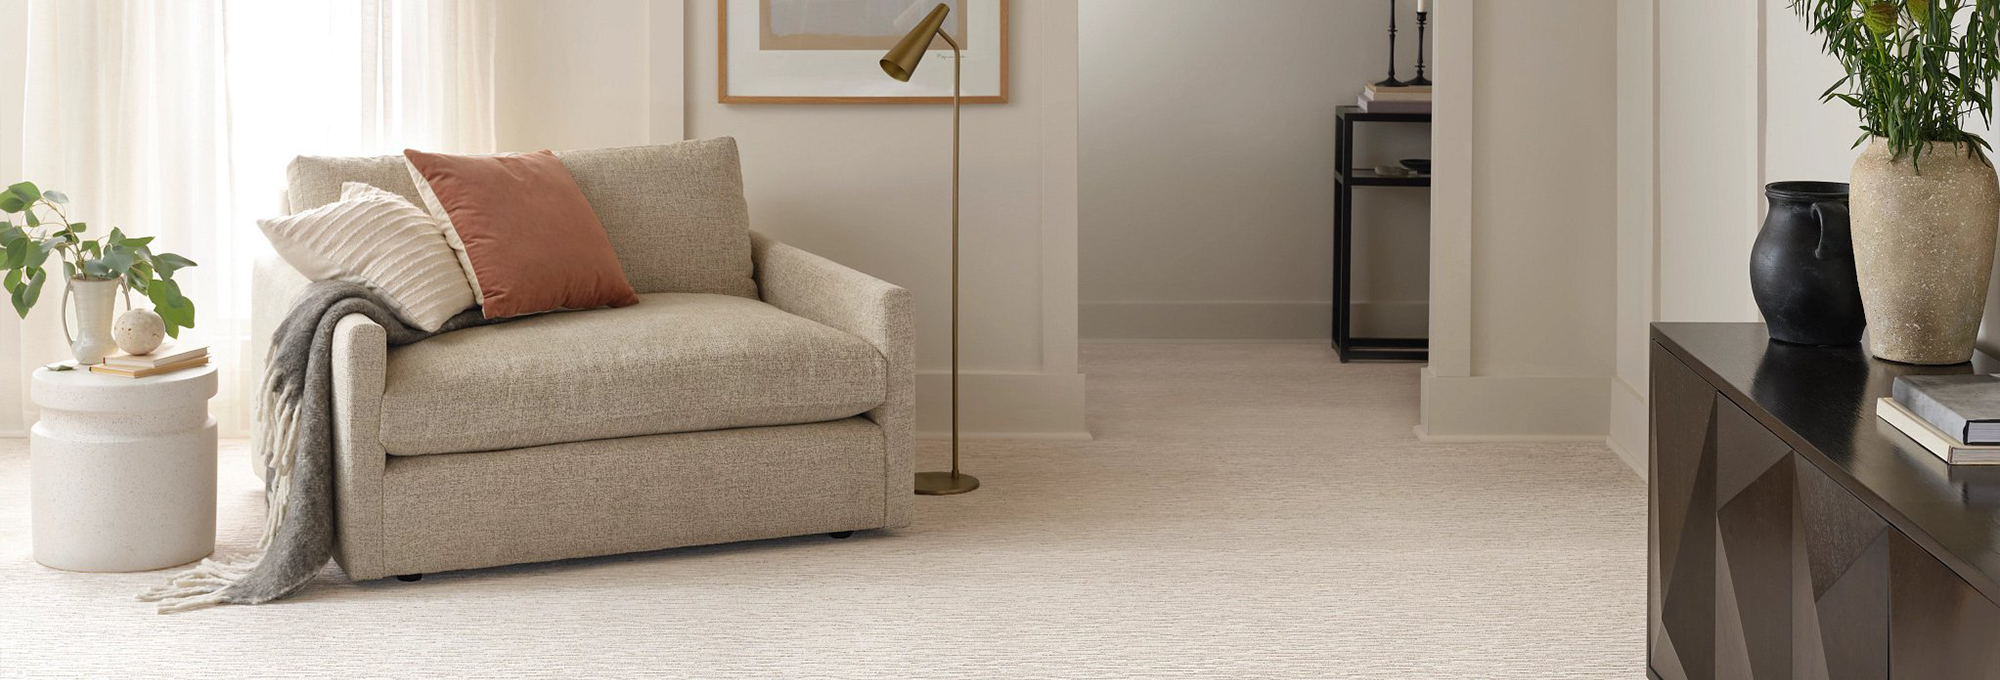 white carpet living room - J&J Carpets LLC in GA